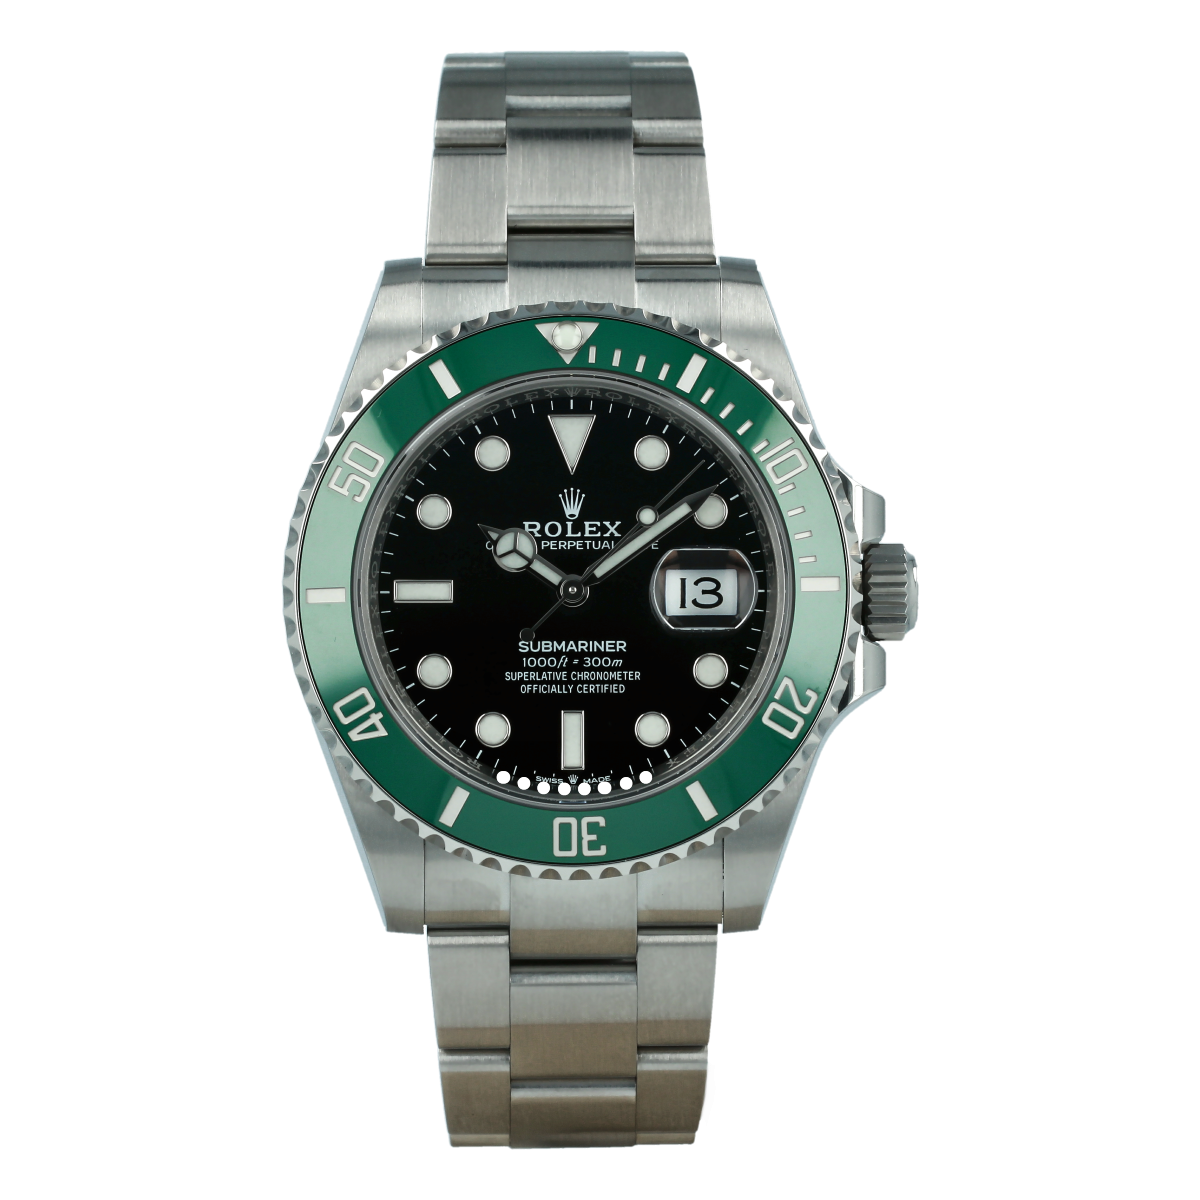 2020 Rolex Submariner 41mm Kermit Green Bezel 126610LV Rolex Watch Review  